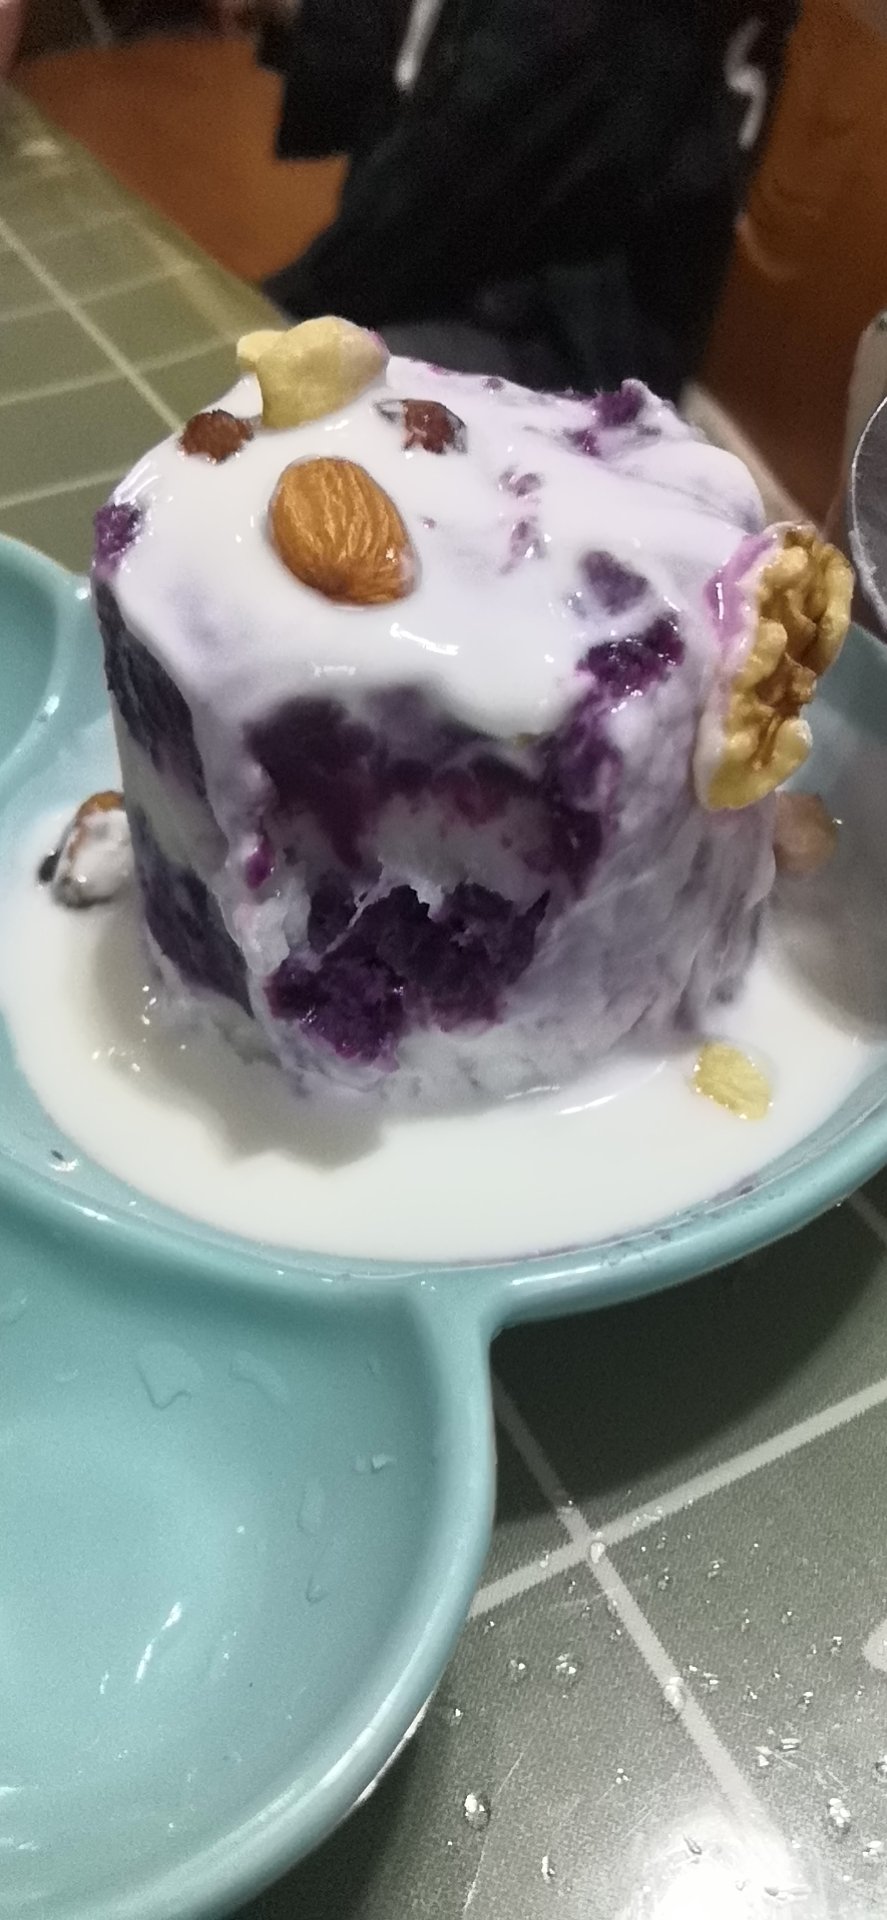 紫薯山药酸奶蛋糕